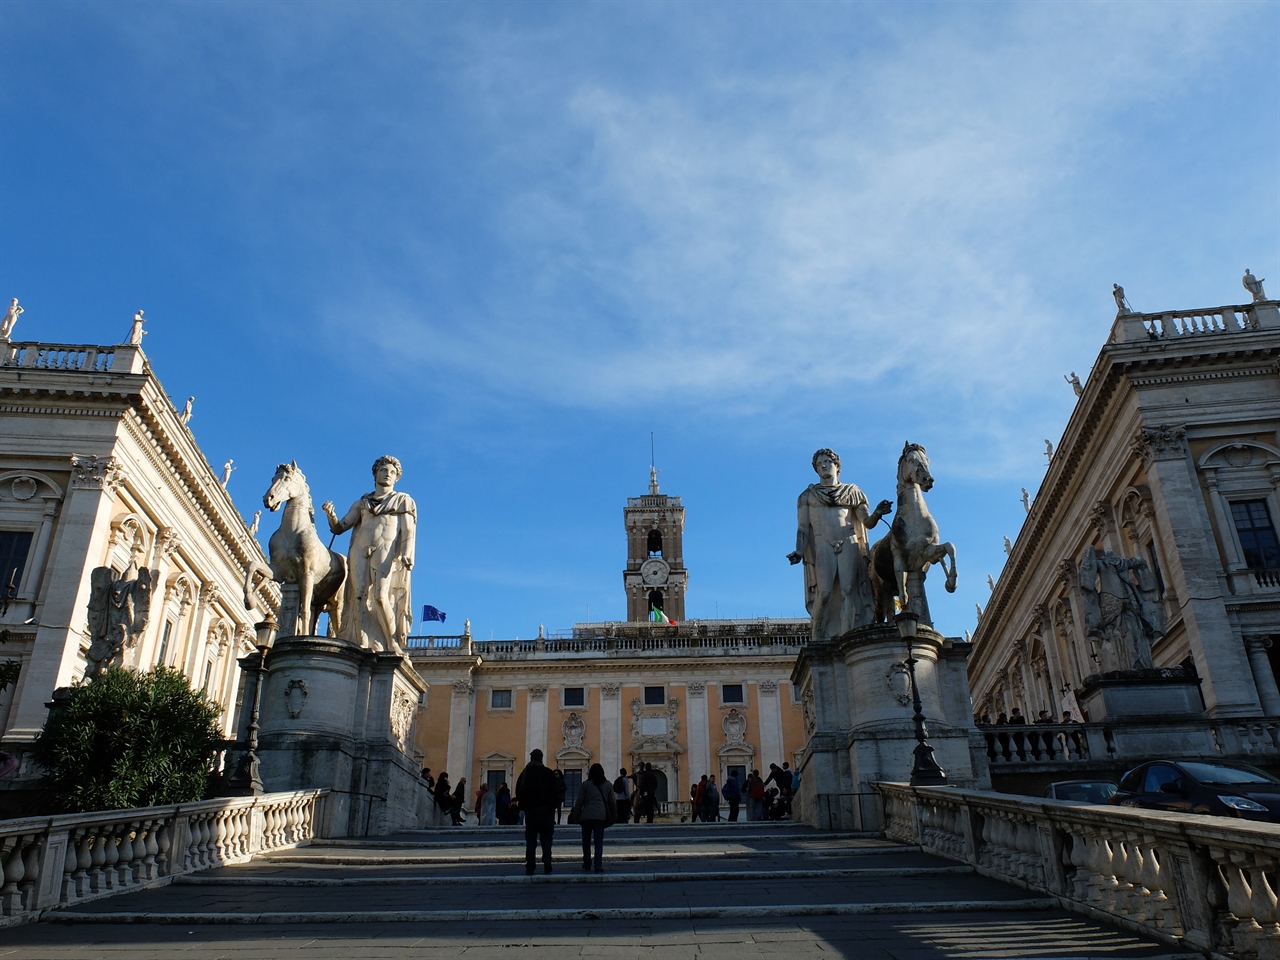 미켈란젤로가 설계한 캄피돌리오 광장입니다. 계단 위 '카스토르와 폴룩스'의 석상. 정면 건물이 구 시청사, 왼쪽이 '누오보 궁전', 오른쪽이 '콘세르바토리 궁전'입니다.